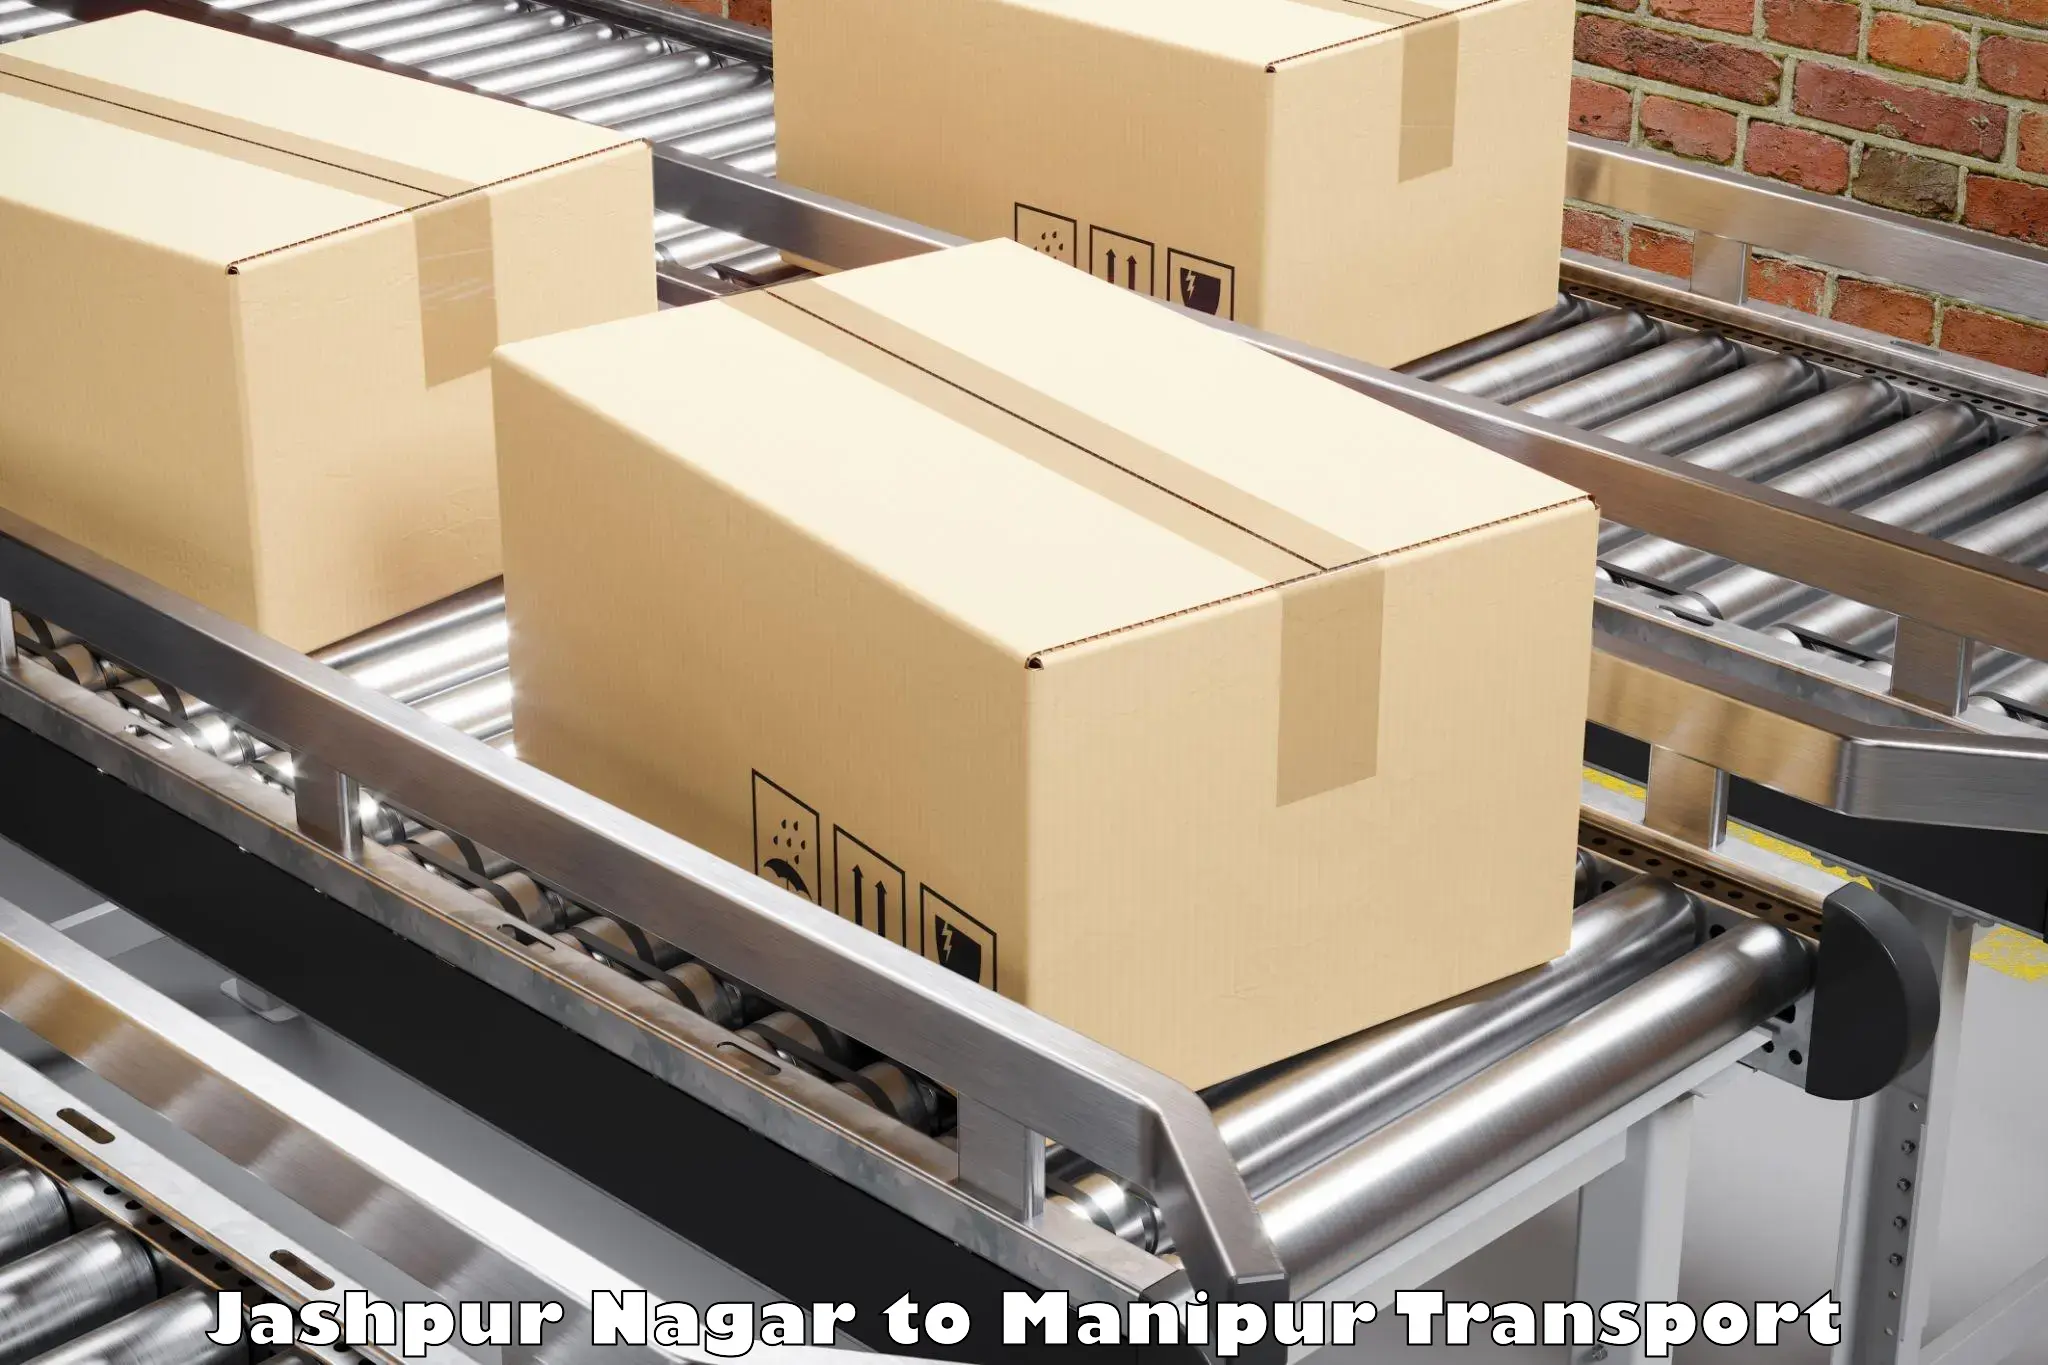 Daily parcel service transport Jashpur Nagar to Manipur